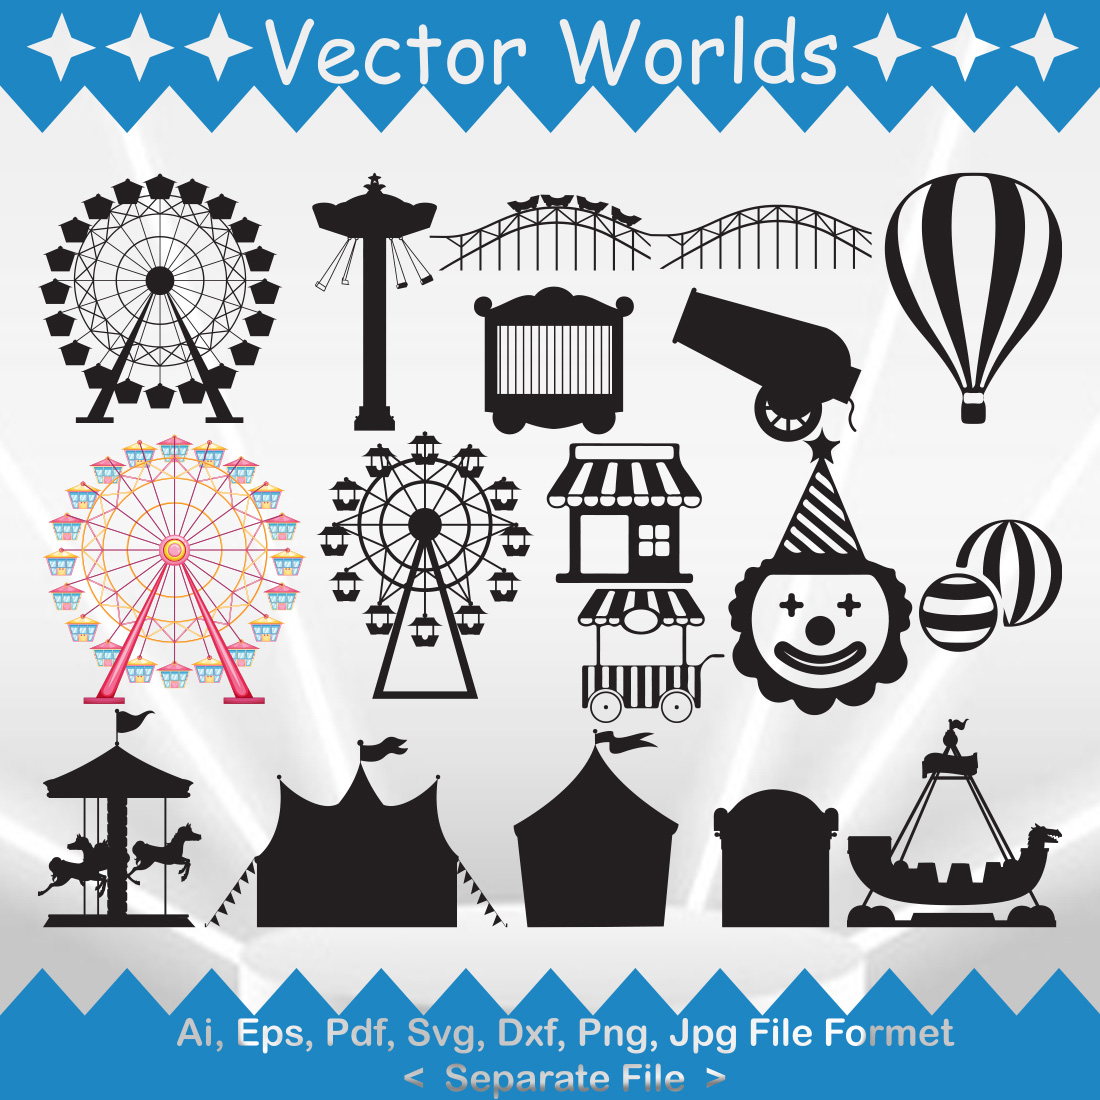 A selection of exquisite amusement park vector images.